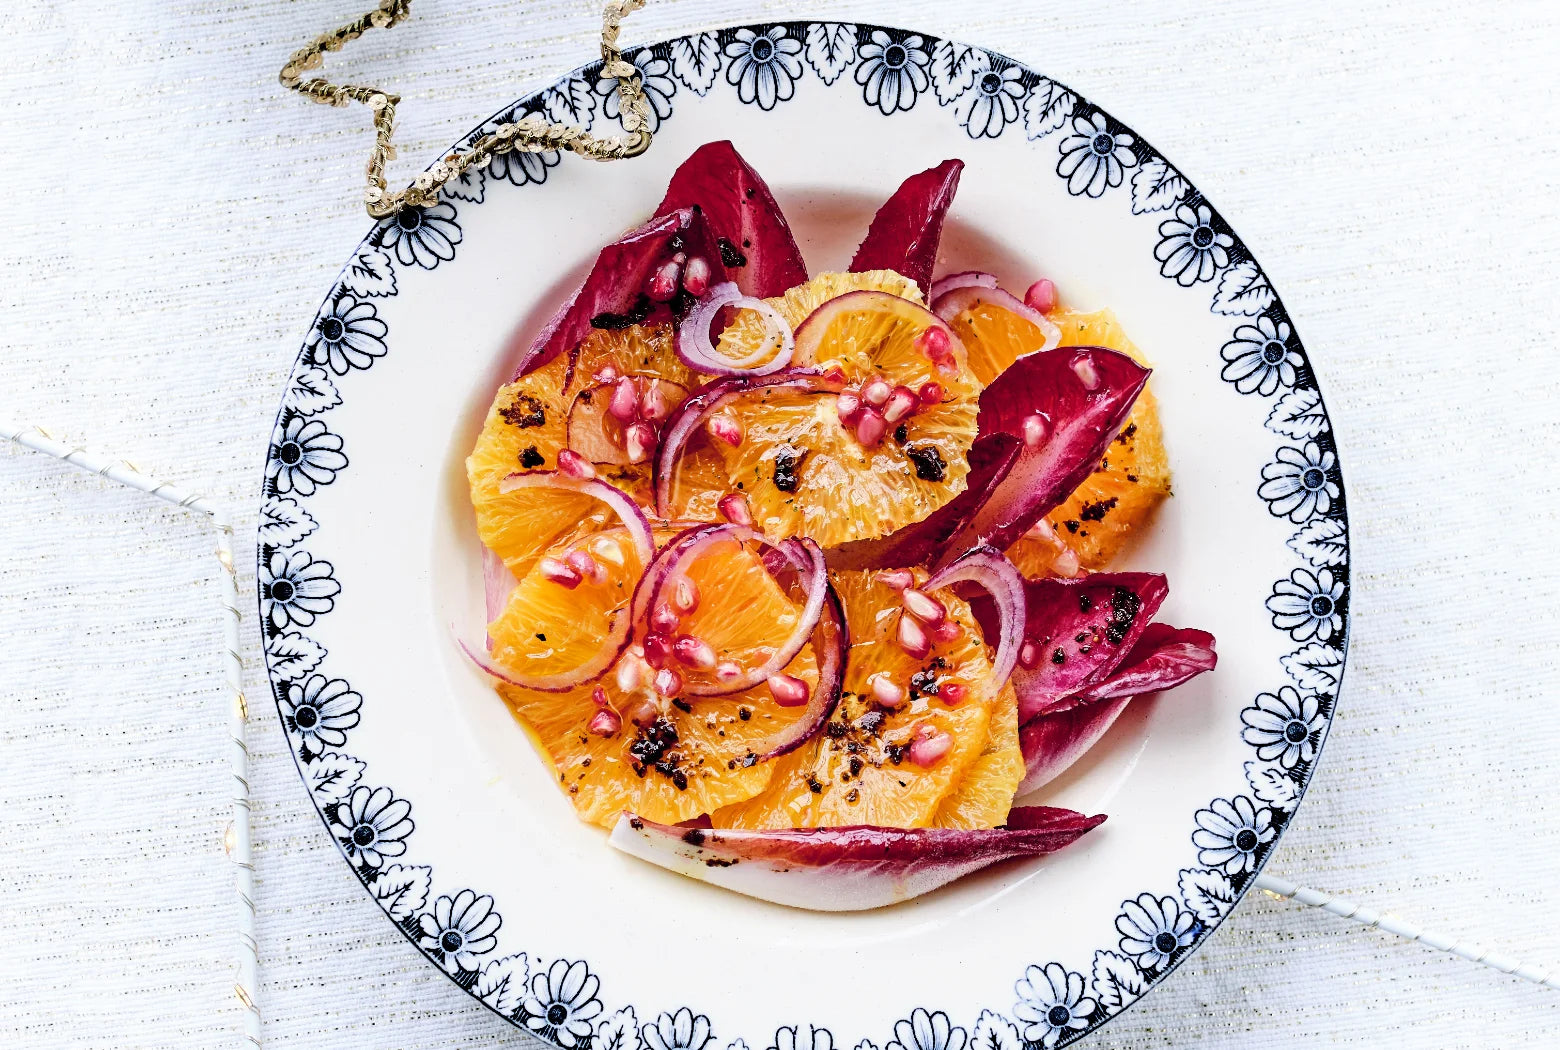 Salat med appelsiner, raddichio og granatæble, opskrift fra Oliviers & Co